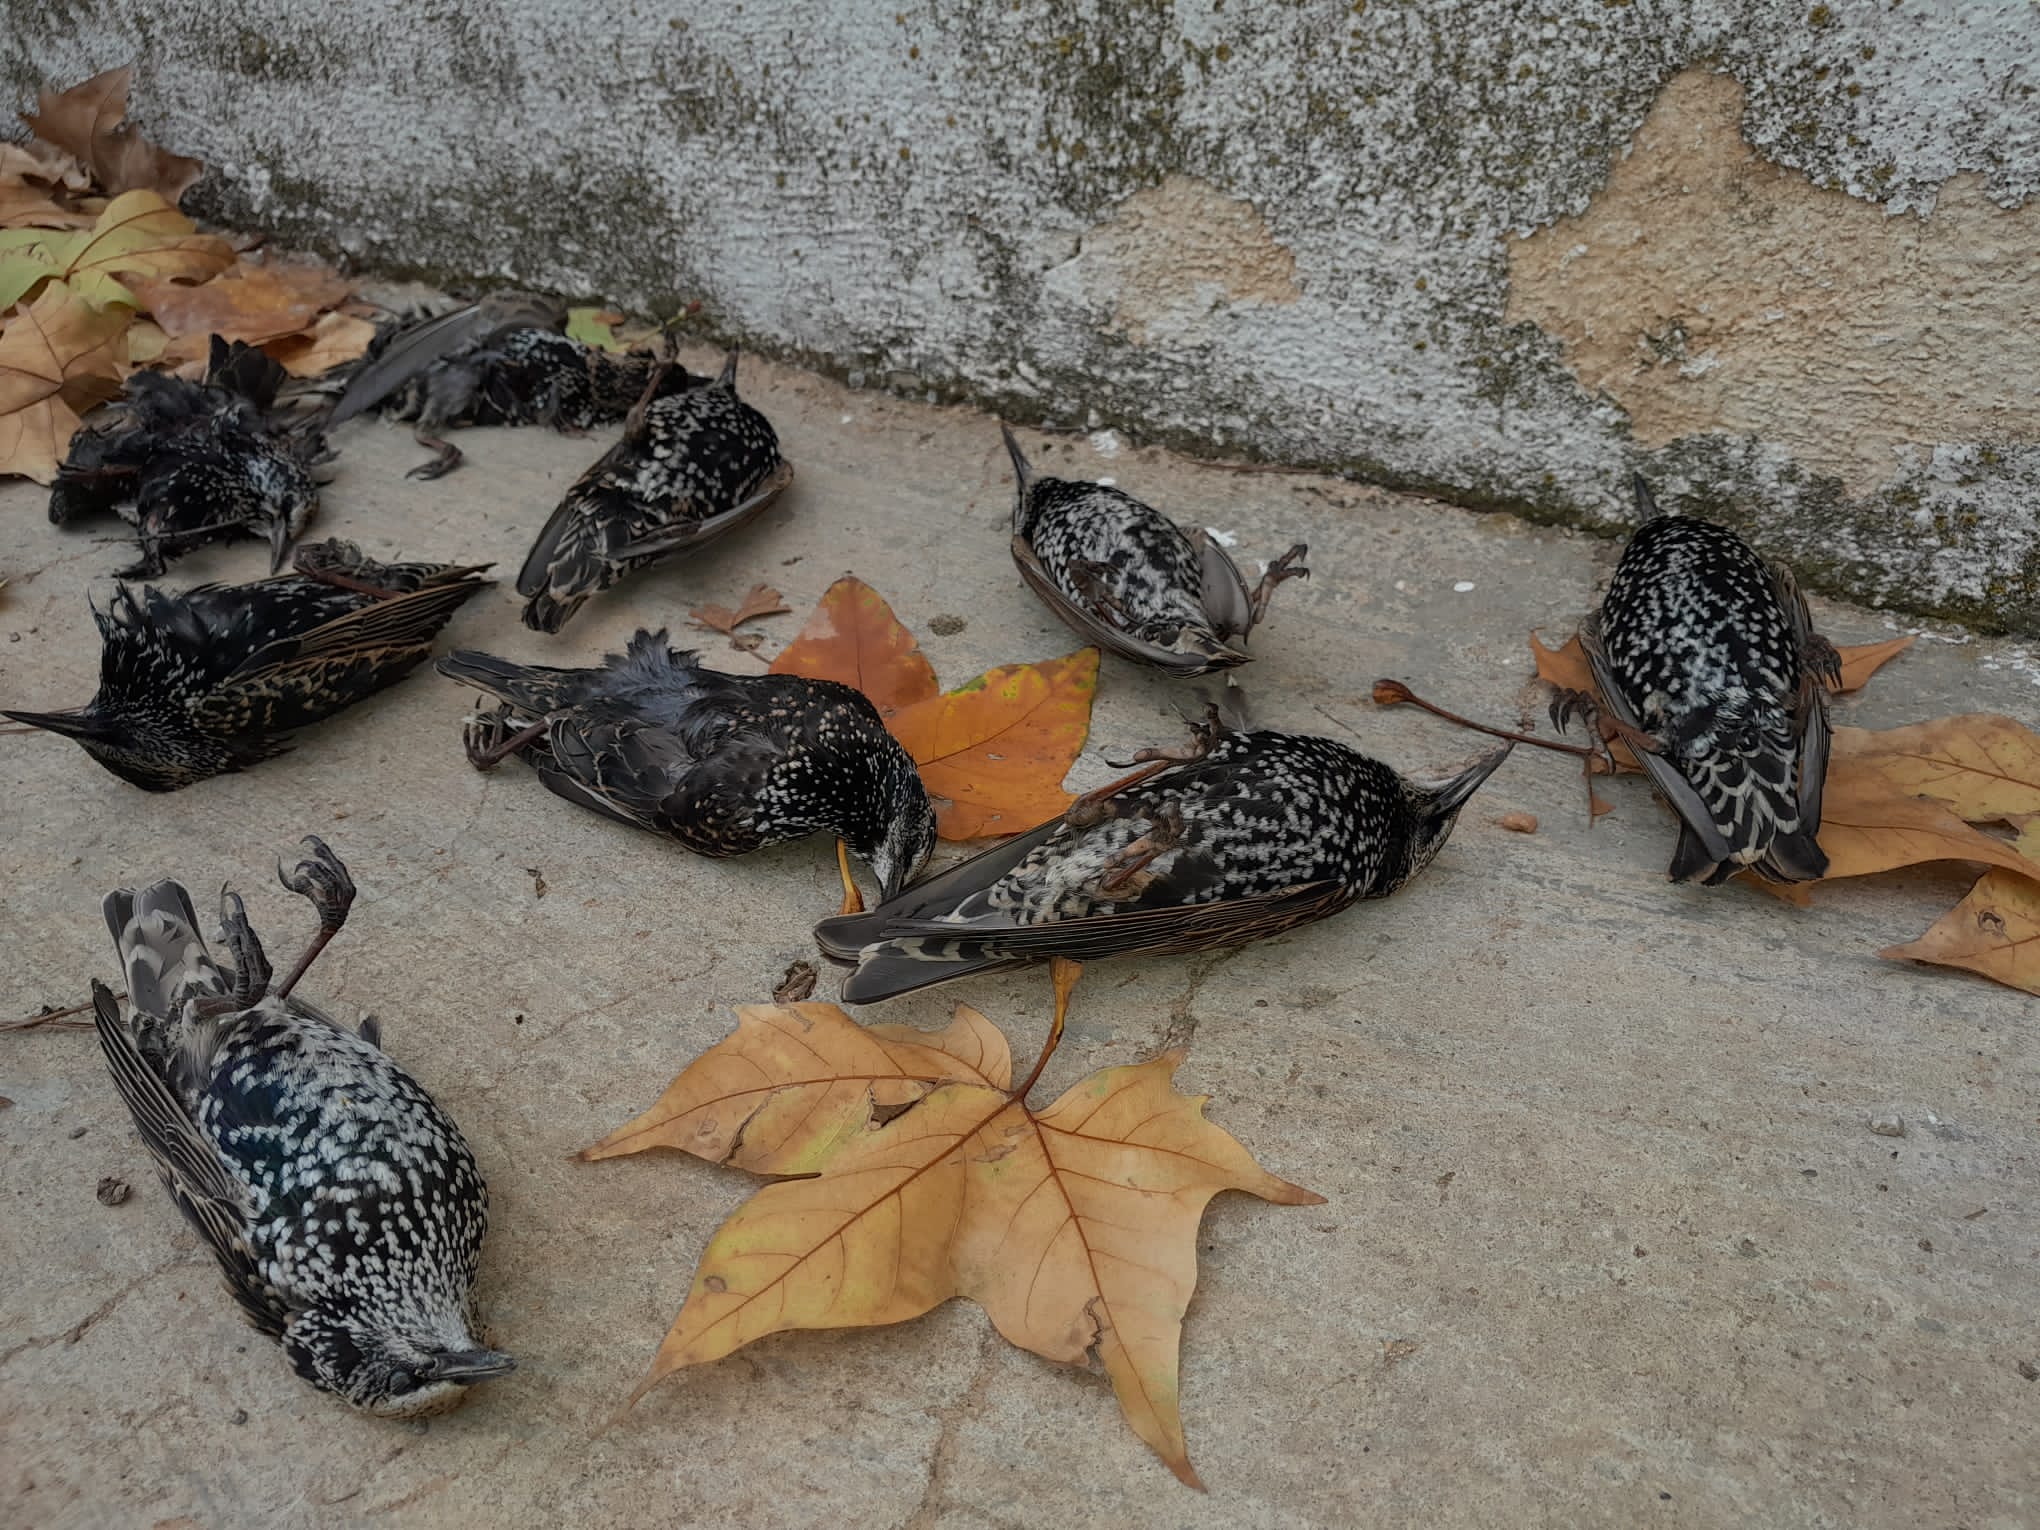 Las aves fueron halladas en Requena, Utiel y San Antonio. Foto: @AAMMRequena Foto: @AAMMRequena